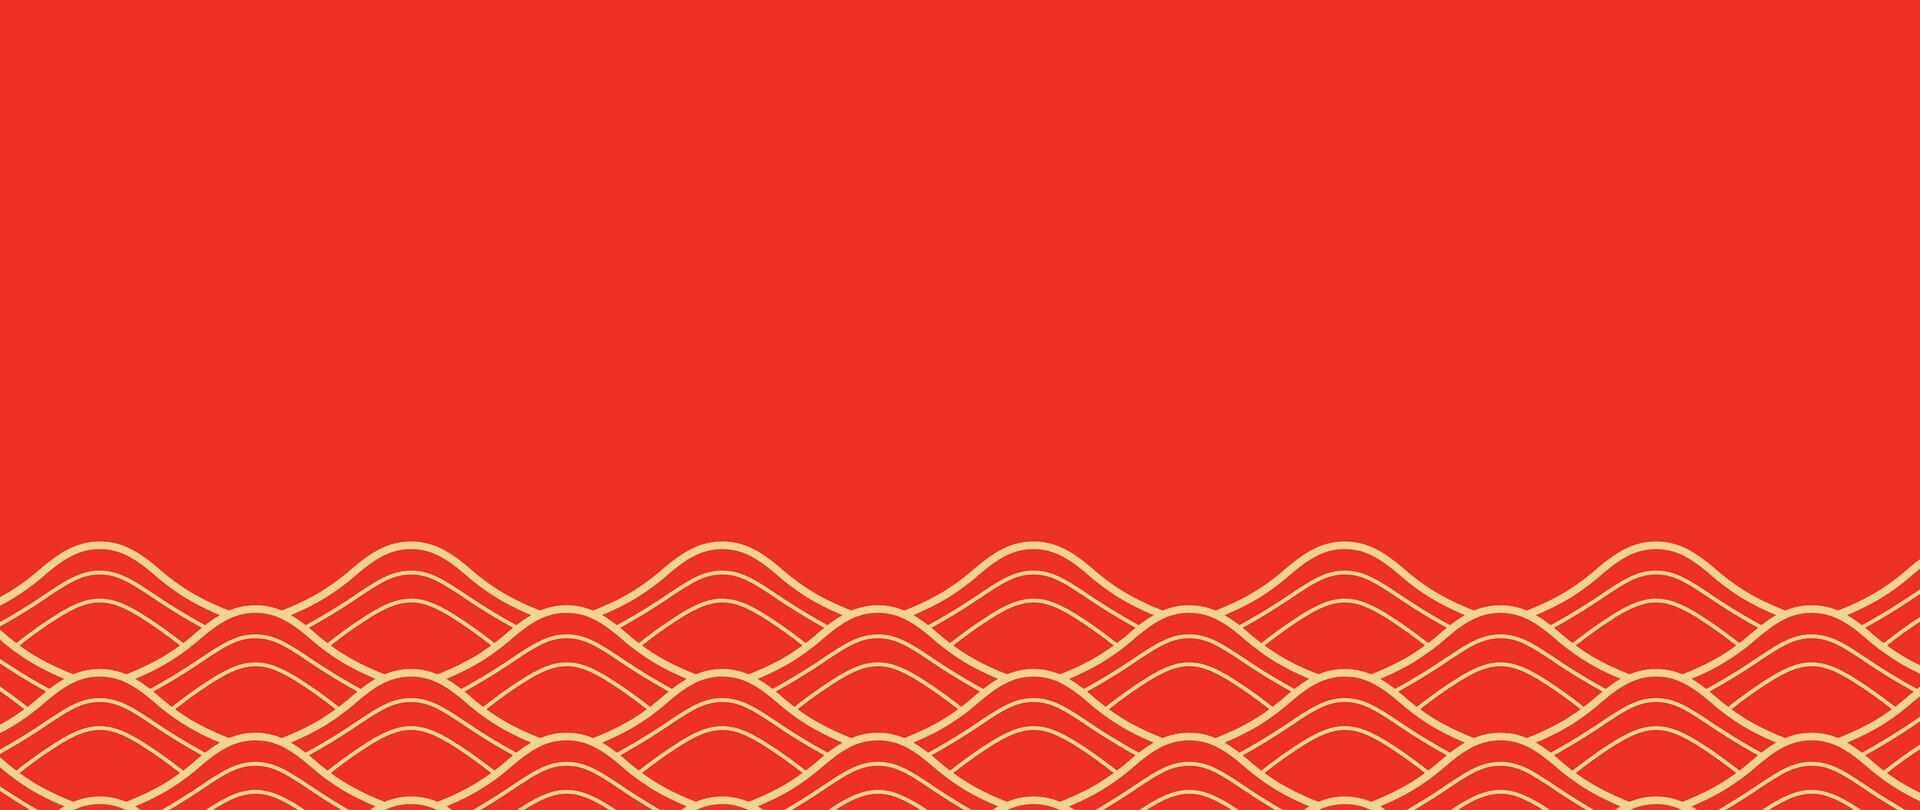 Japonais or vague Contexte vecteur. fond d'écran conception avec or et rouge océan vague modèle toile de fond. moderne luxe Oriental illustration pour couverture, bannière, site Internet, décor, frontière. vecteur